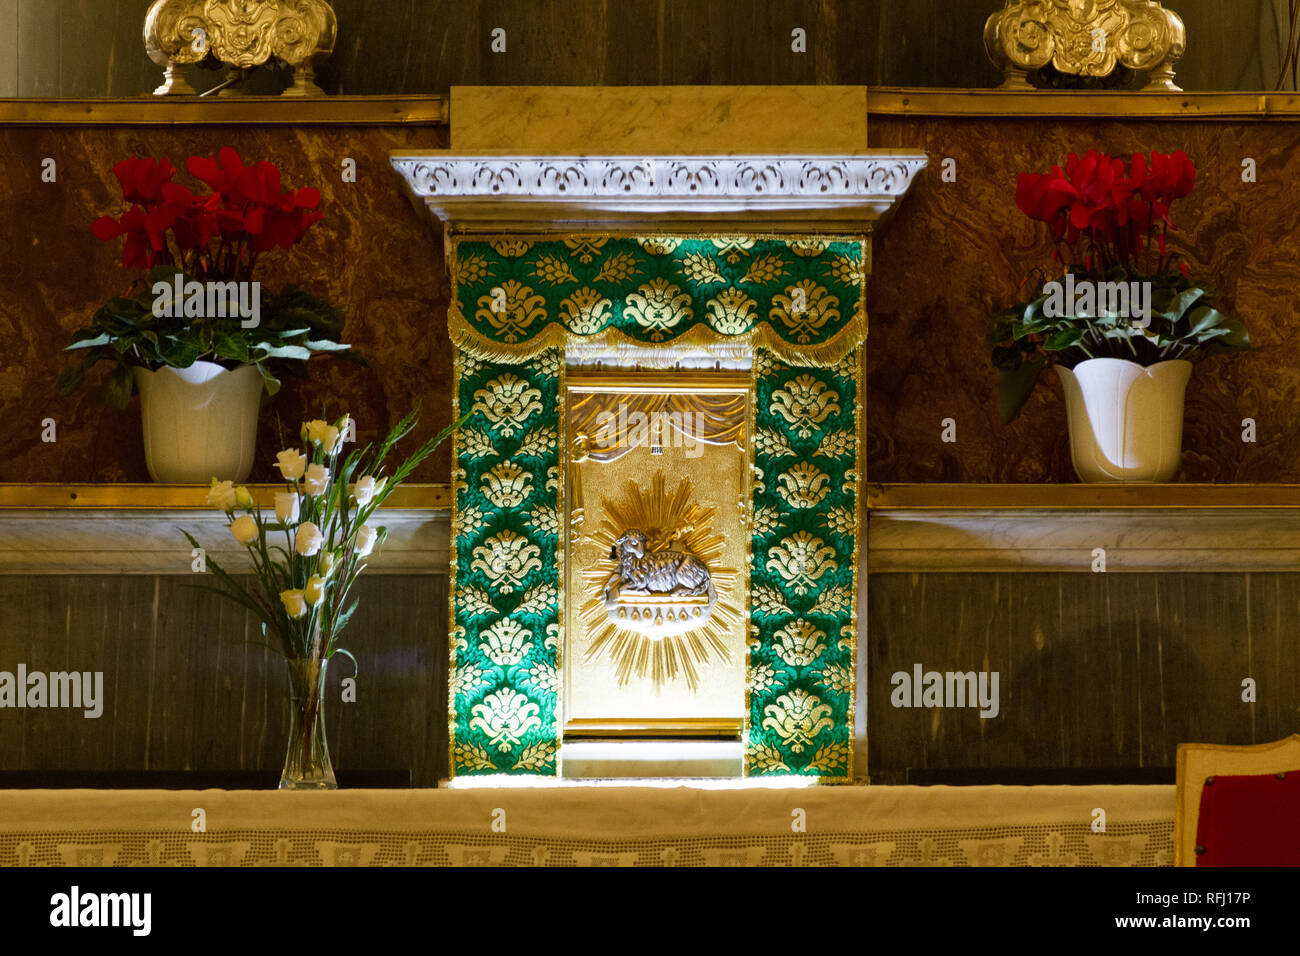 Pavie, Italie. 20 novembre 2017. Le tabernacle de l'Eucharistie dans l'église salésienne "Santa Maria delle Grazie' - Sainte Marie de la grâce à Pavie. Banque D'Images